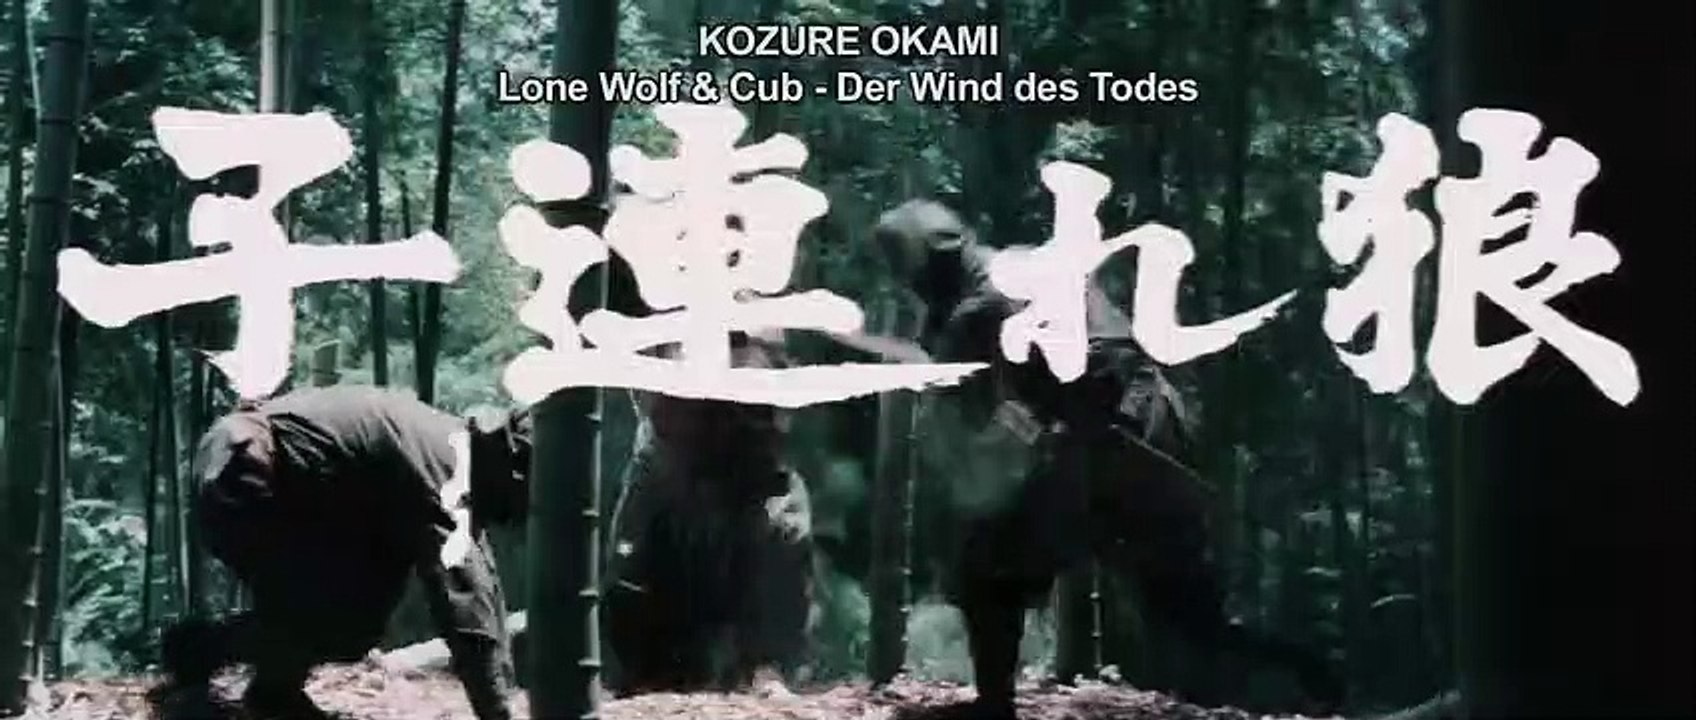 Okami - Der Wind des Todes | movie | 1972 | Official Trailer